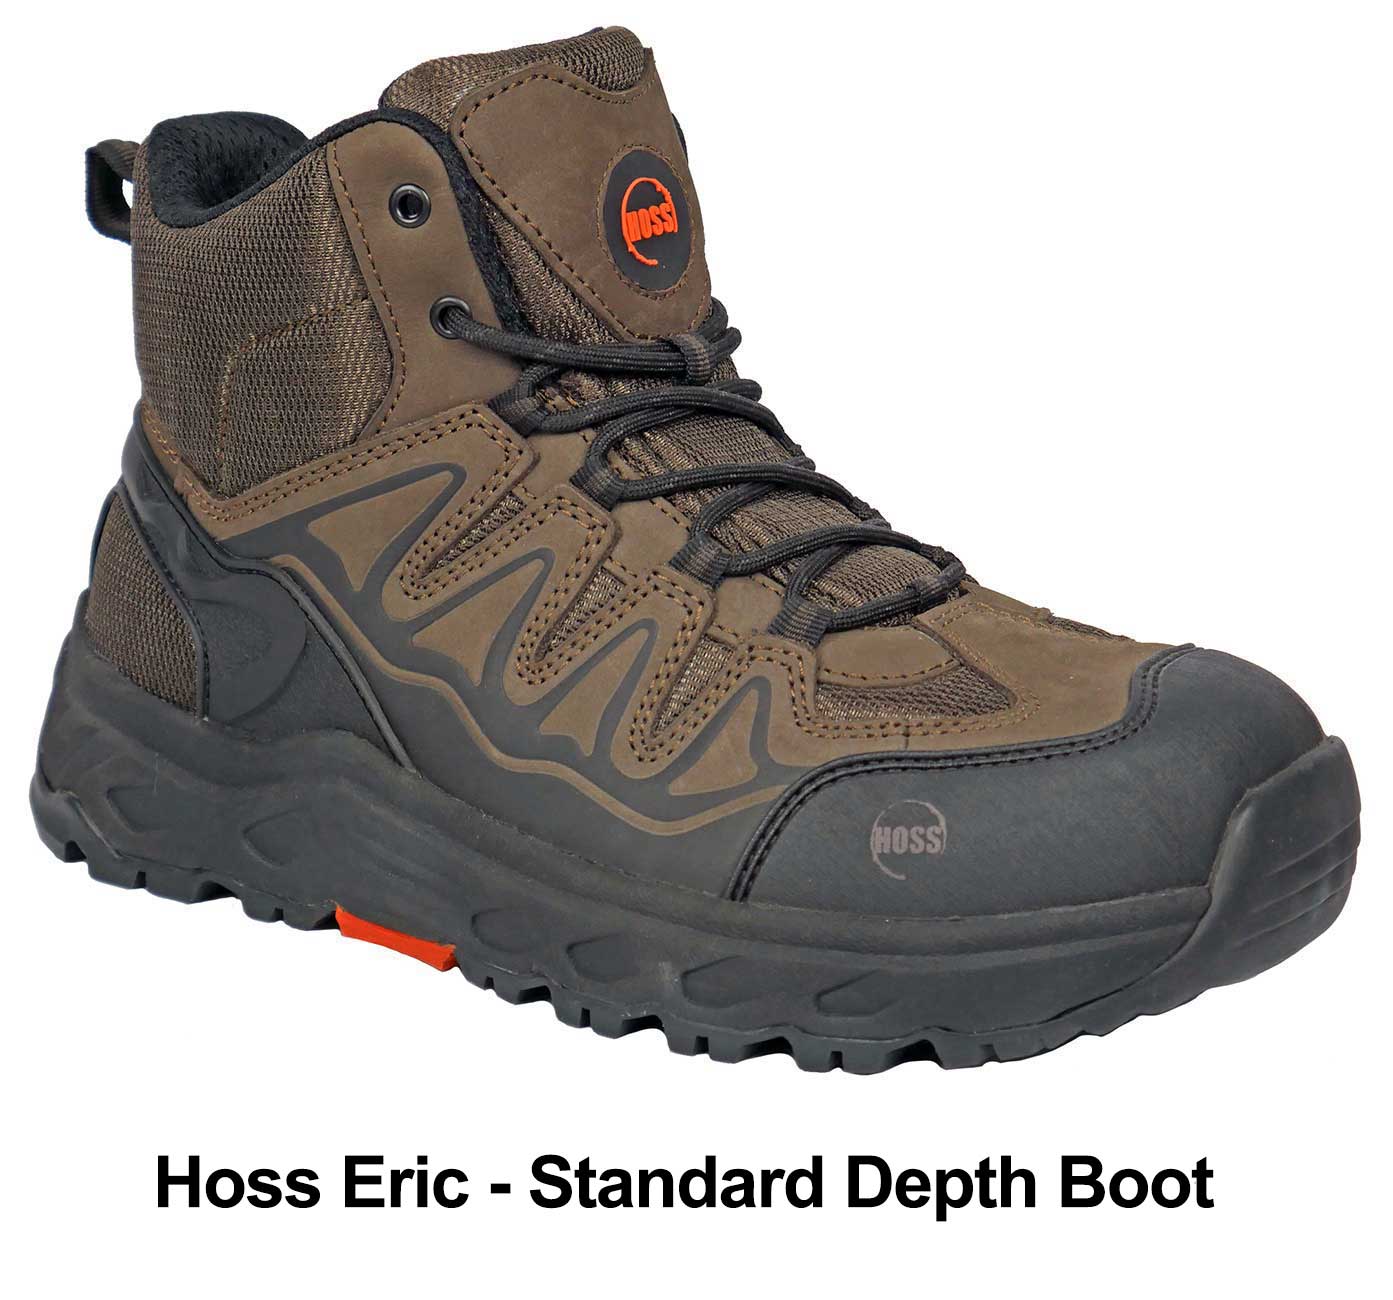 Hoss Eric Standard Depth Boot